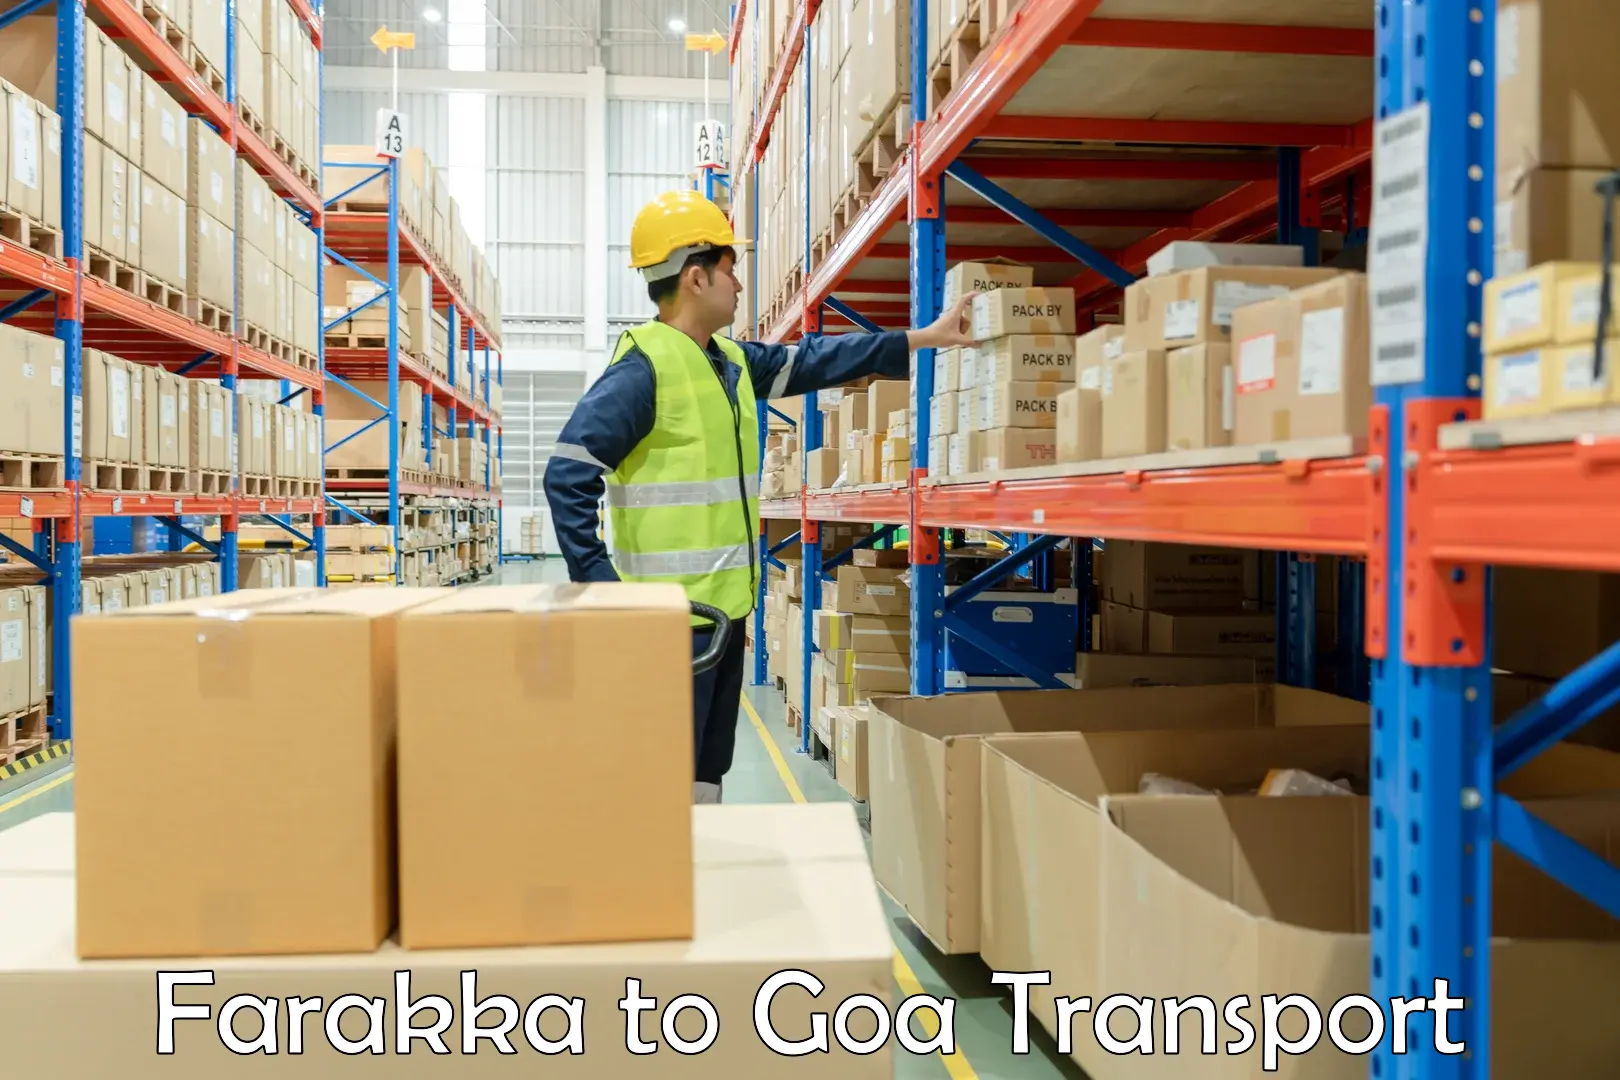 All India transport service Farakka to IIT Goa